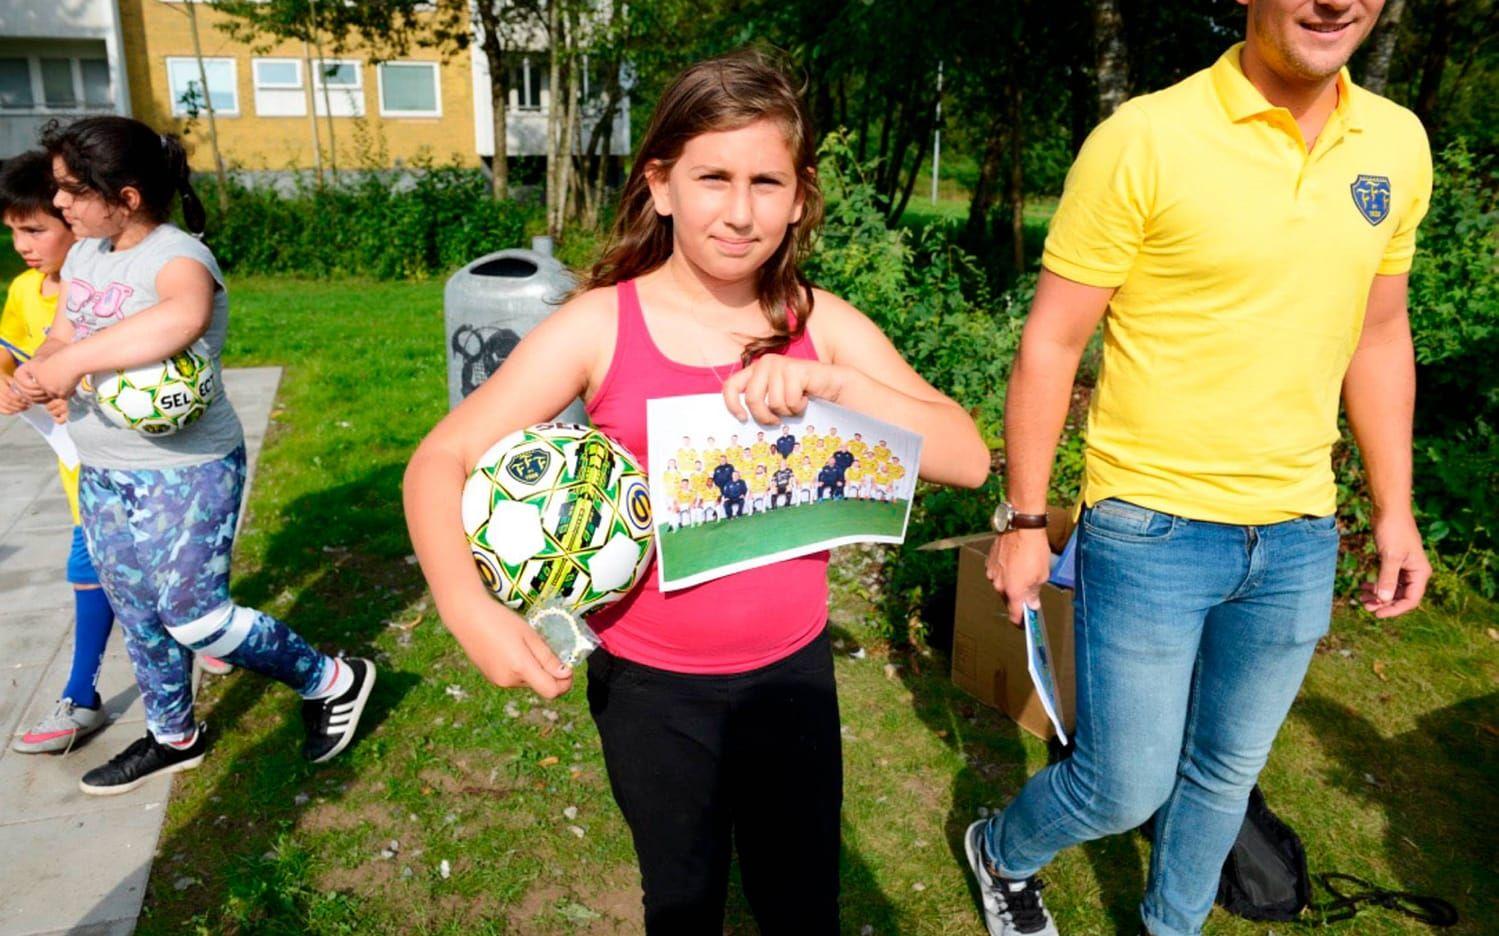 Emma spelar fotboll, hon tycker det viktigaste är att ha kul inte att vinna. Bild: Ellinor Svensson